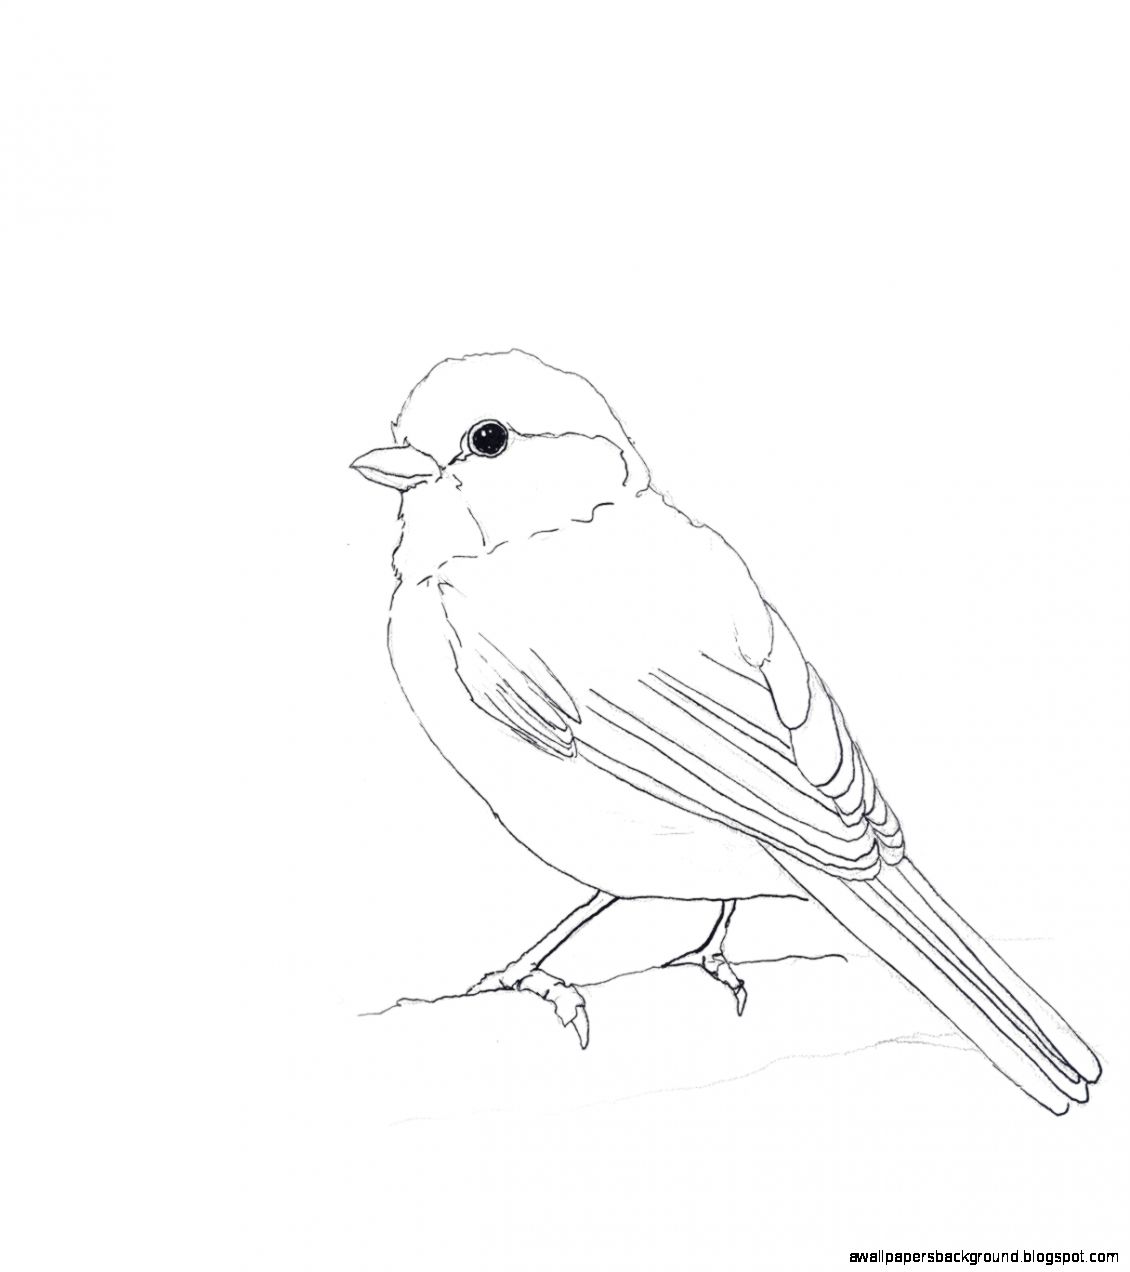 Рисунки птиц для срисовки легкие. Птица рисунок. Рисунки птиц для срисовки. Птичка рисунок карандашом. Рисунок птички карандашом для срисовки.